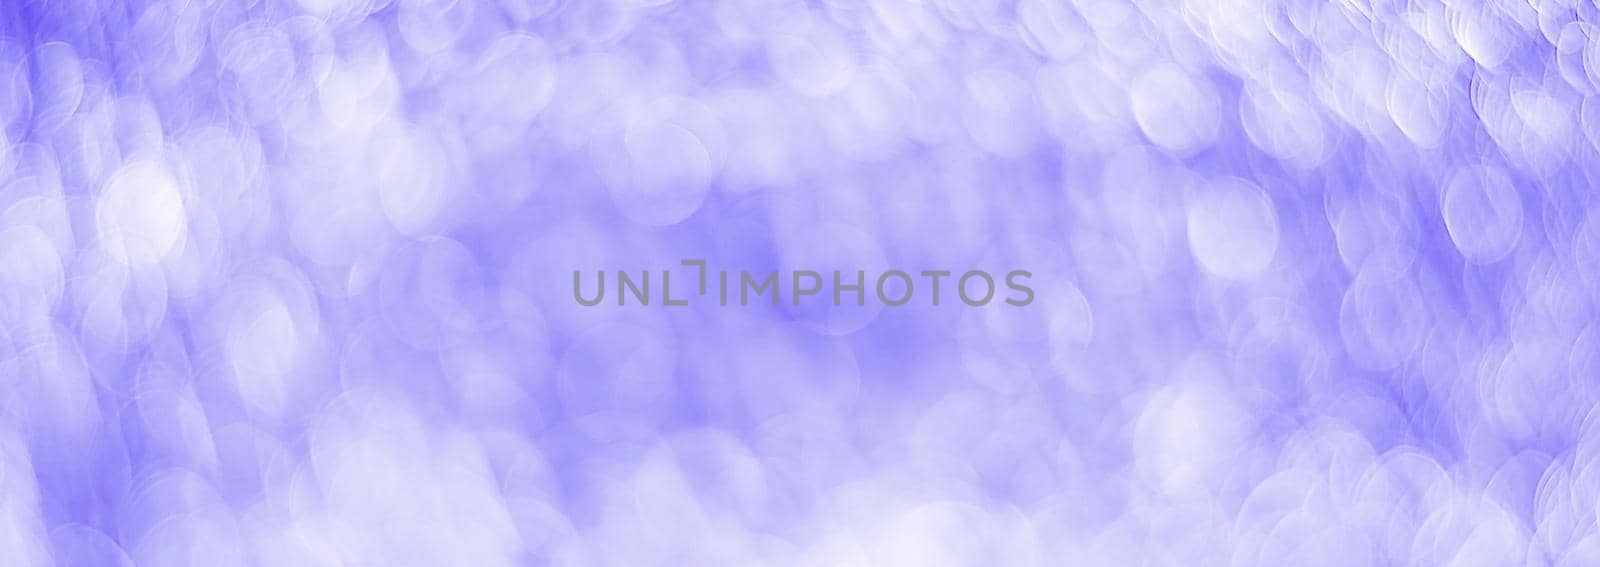 Purple abstract background with bokeh defocused lights by vikiriki